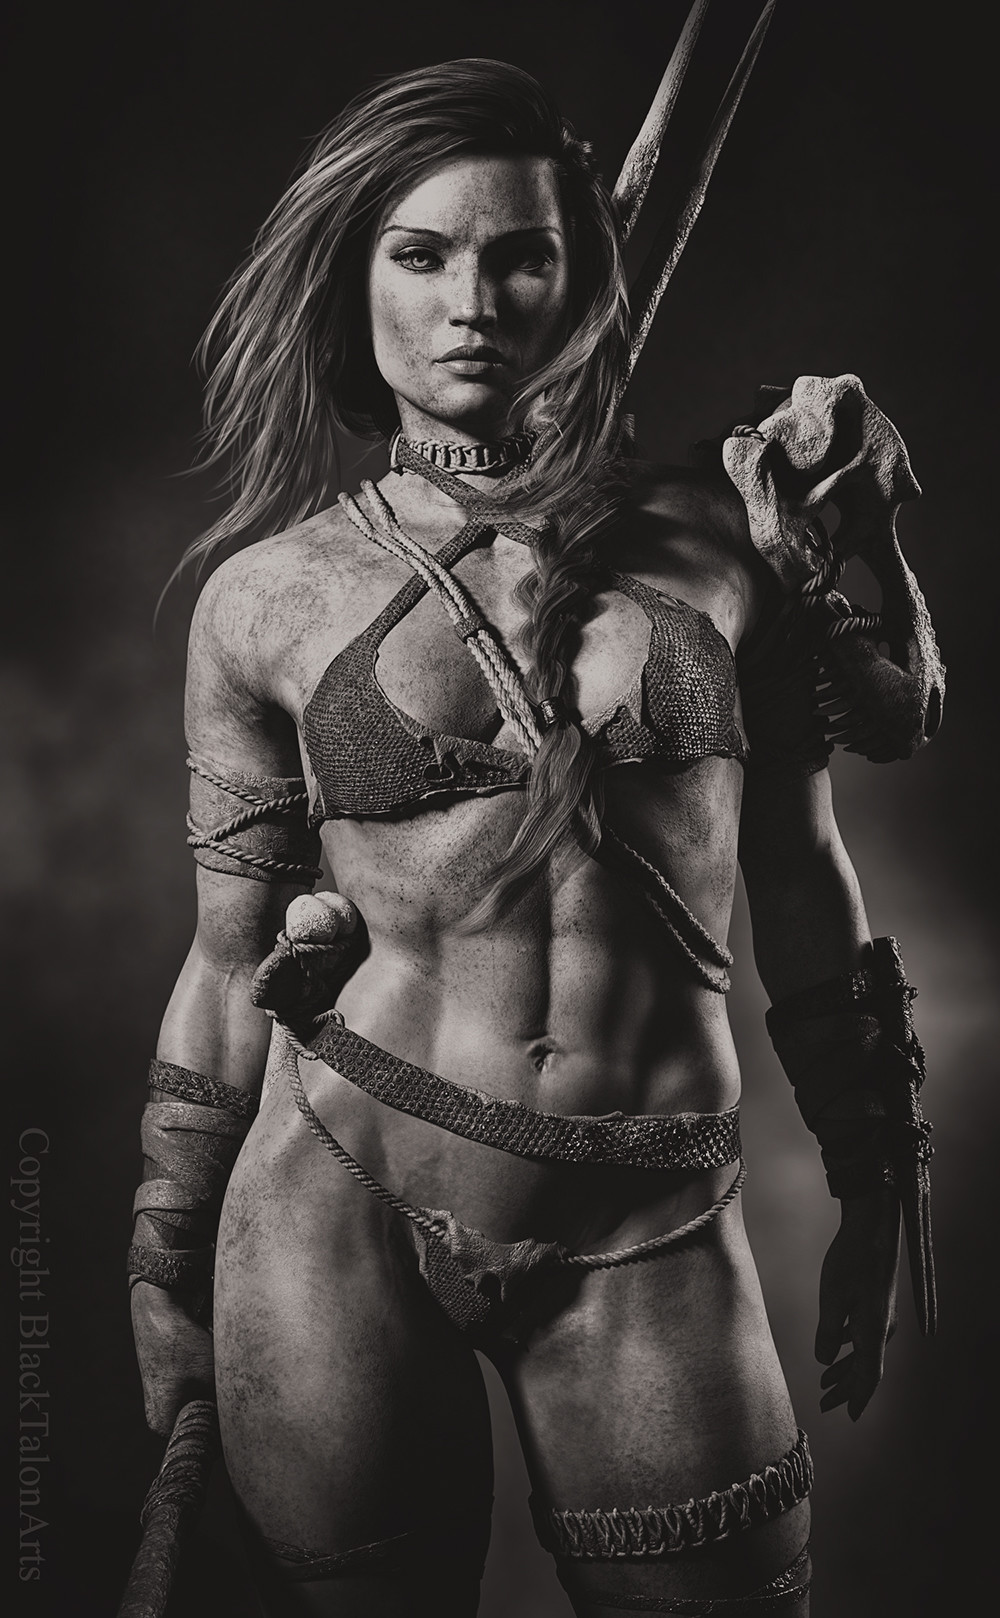 Badass Warrior Women 3D Art